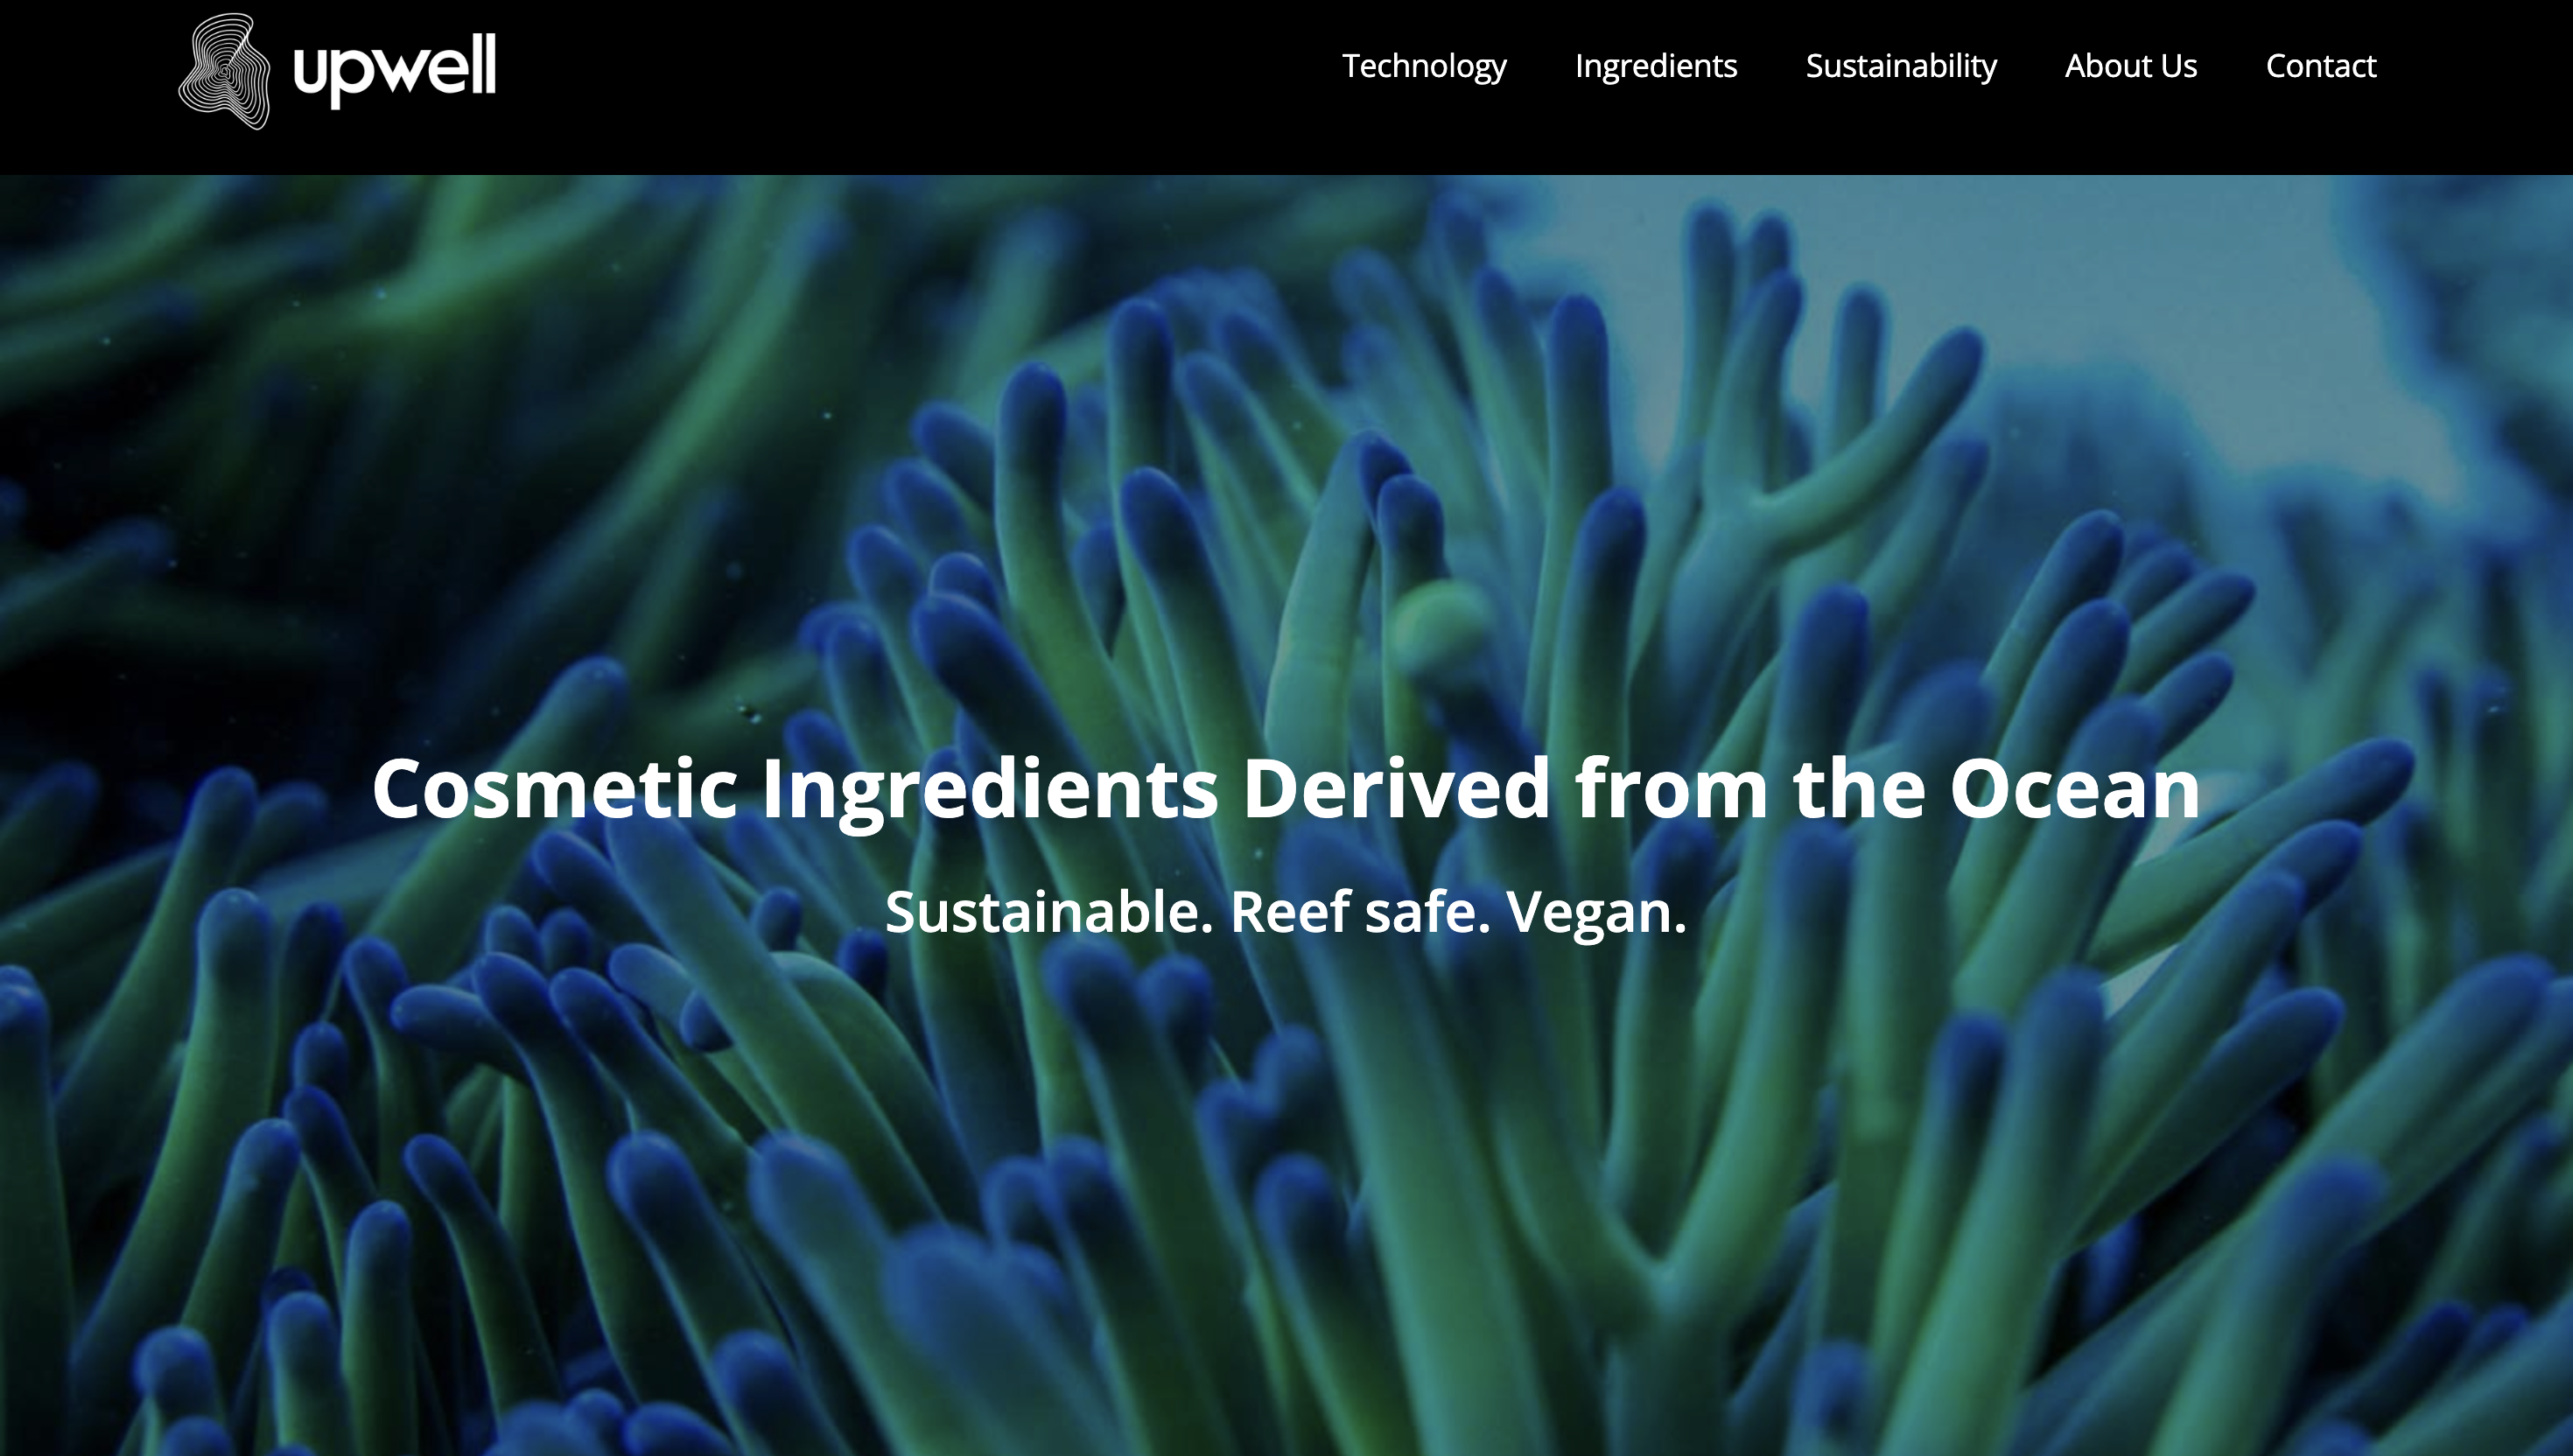 海洋材料创业公司 Upwell 从微藻中提取蜡，或将替代美容产品中的石油和动物基蜡